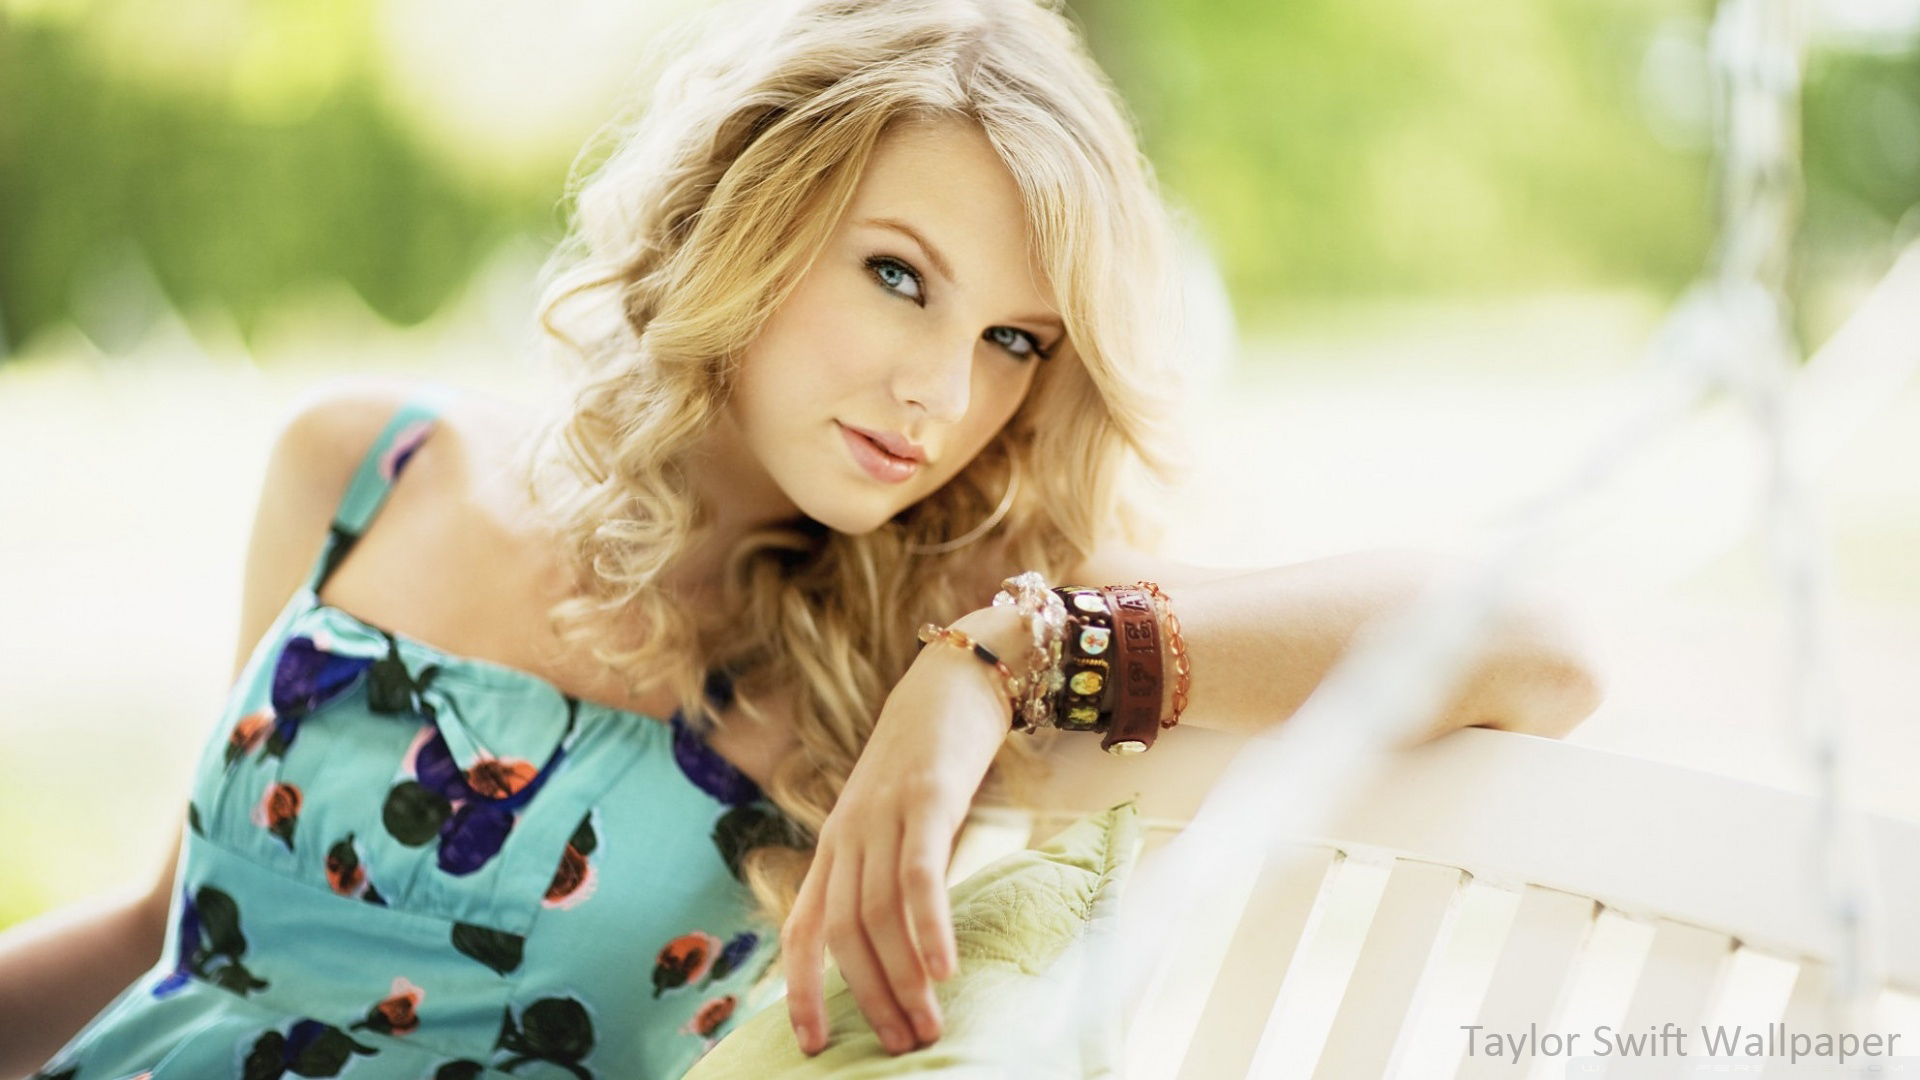 Taylor Swift Wallpaper Full HD 1080p